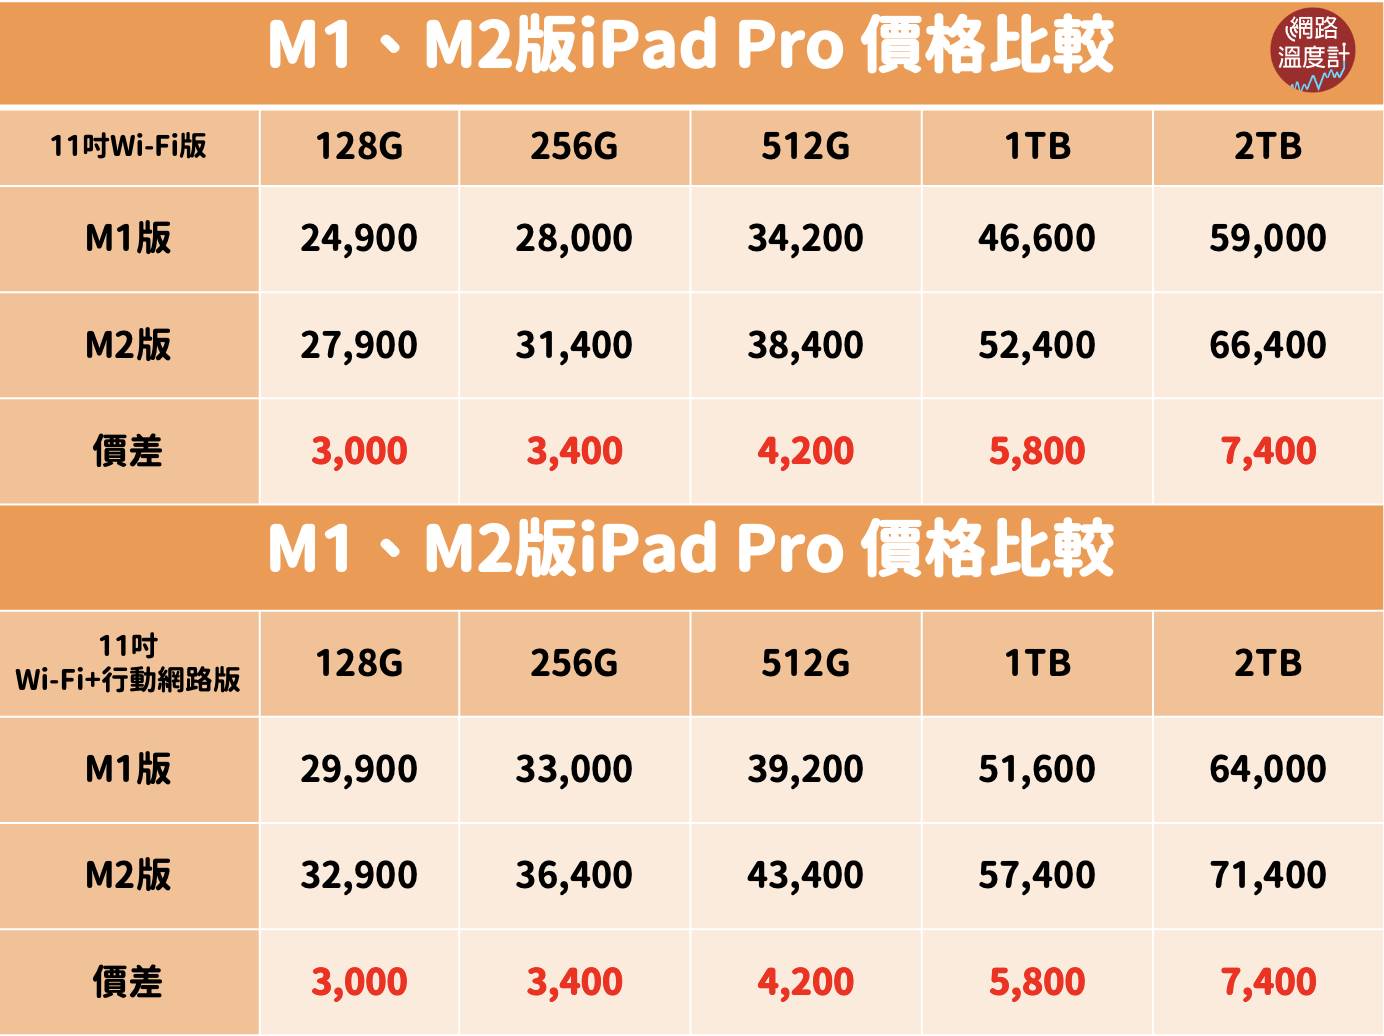 蘋果公司昨（18）日無預警在官網推出M2版iPad Pro、第10代iPad以及Apple TV 4K等新品，讓果粉們又驚又喜，不過目前尚未確定正式上市日期。雖然新產品規格、效能有提升，但價格方面也是「漲好漲滿」，M2版2TB的iPad Pro比前一代貴了7,650元，舊款iPad也默默被調漲，讓許多人怒批根本是「早買早享受，晚買割韭菜」。快跟著小編一起來看看這次的售價漲幅懶人包吧！